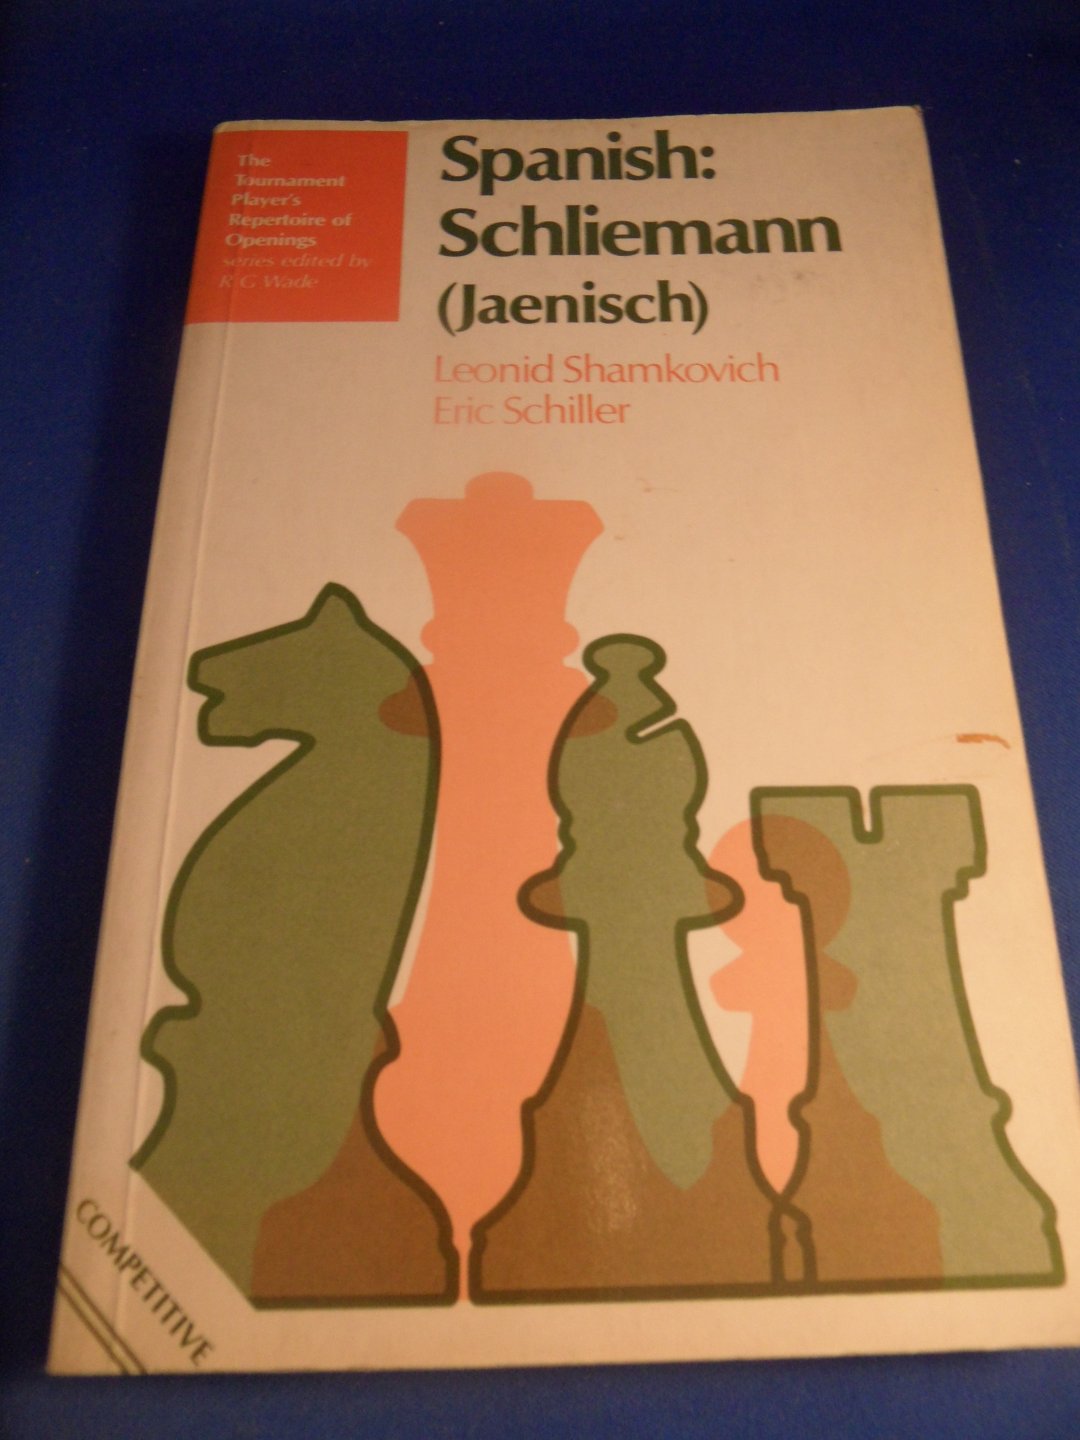 Shamkovich, L., and Schille, E. - Spanish: Schliemann (Jaenisch)